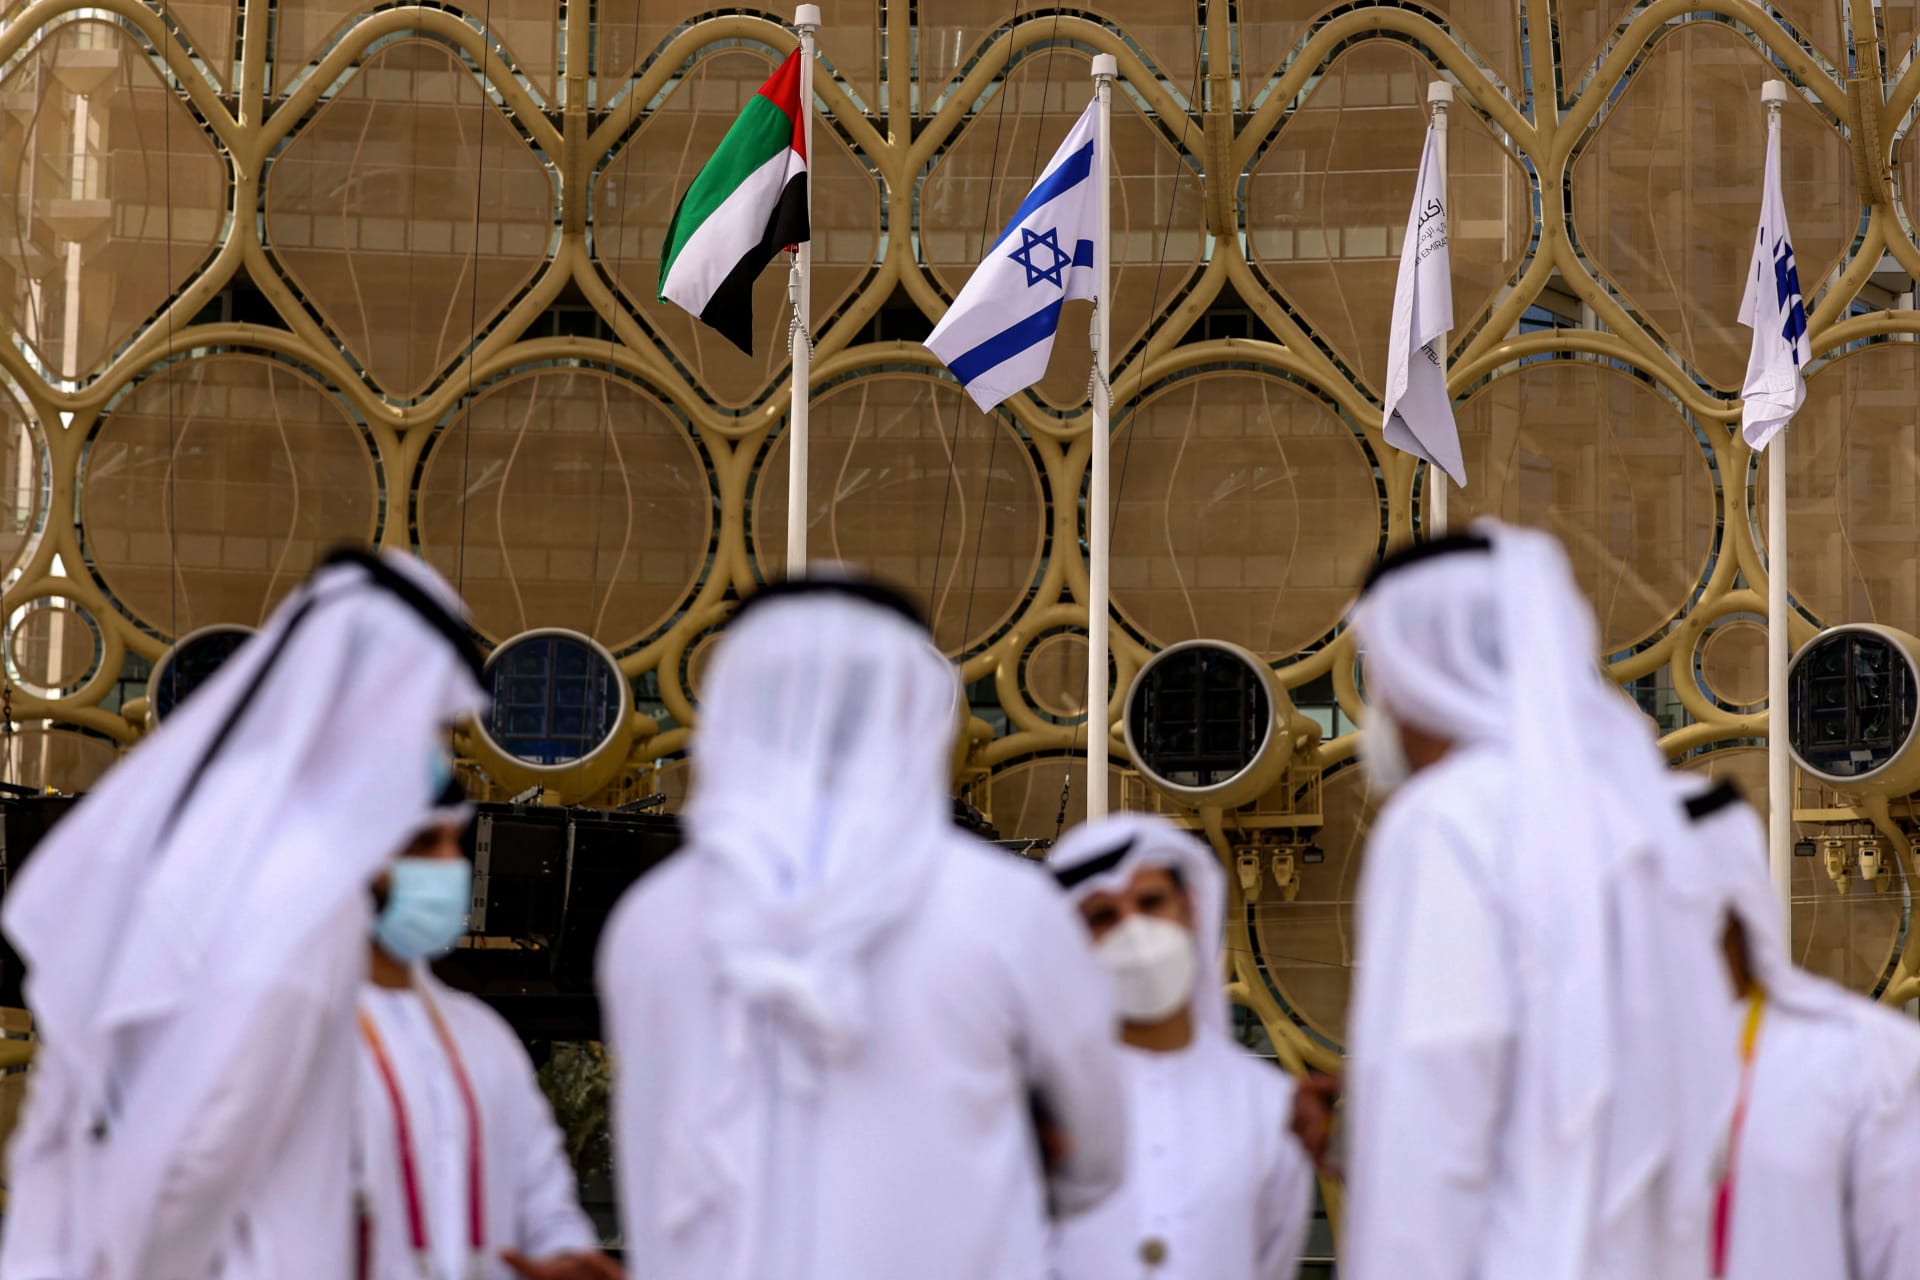 السفير الإسرائيلي في الإمارات يعلن توقيع اتفاقية "شراكة اقتصادية شاملة" مع أبوظبي